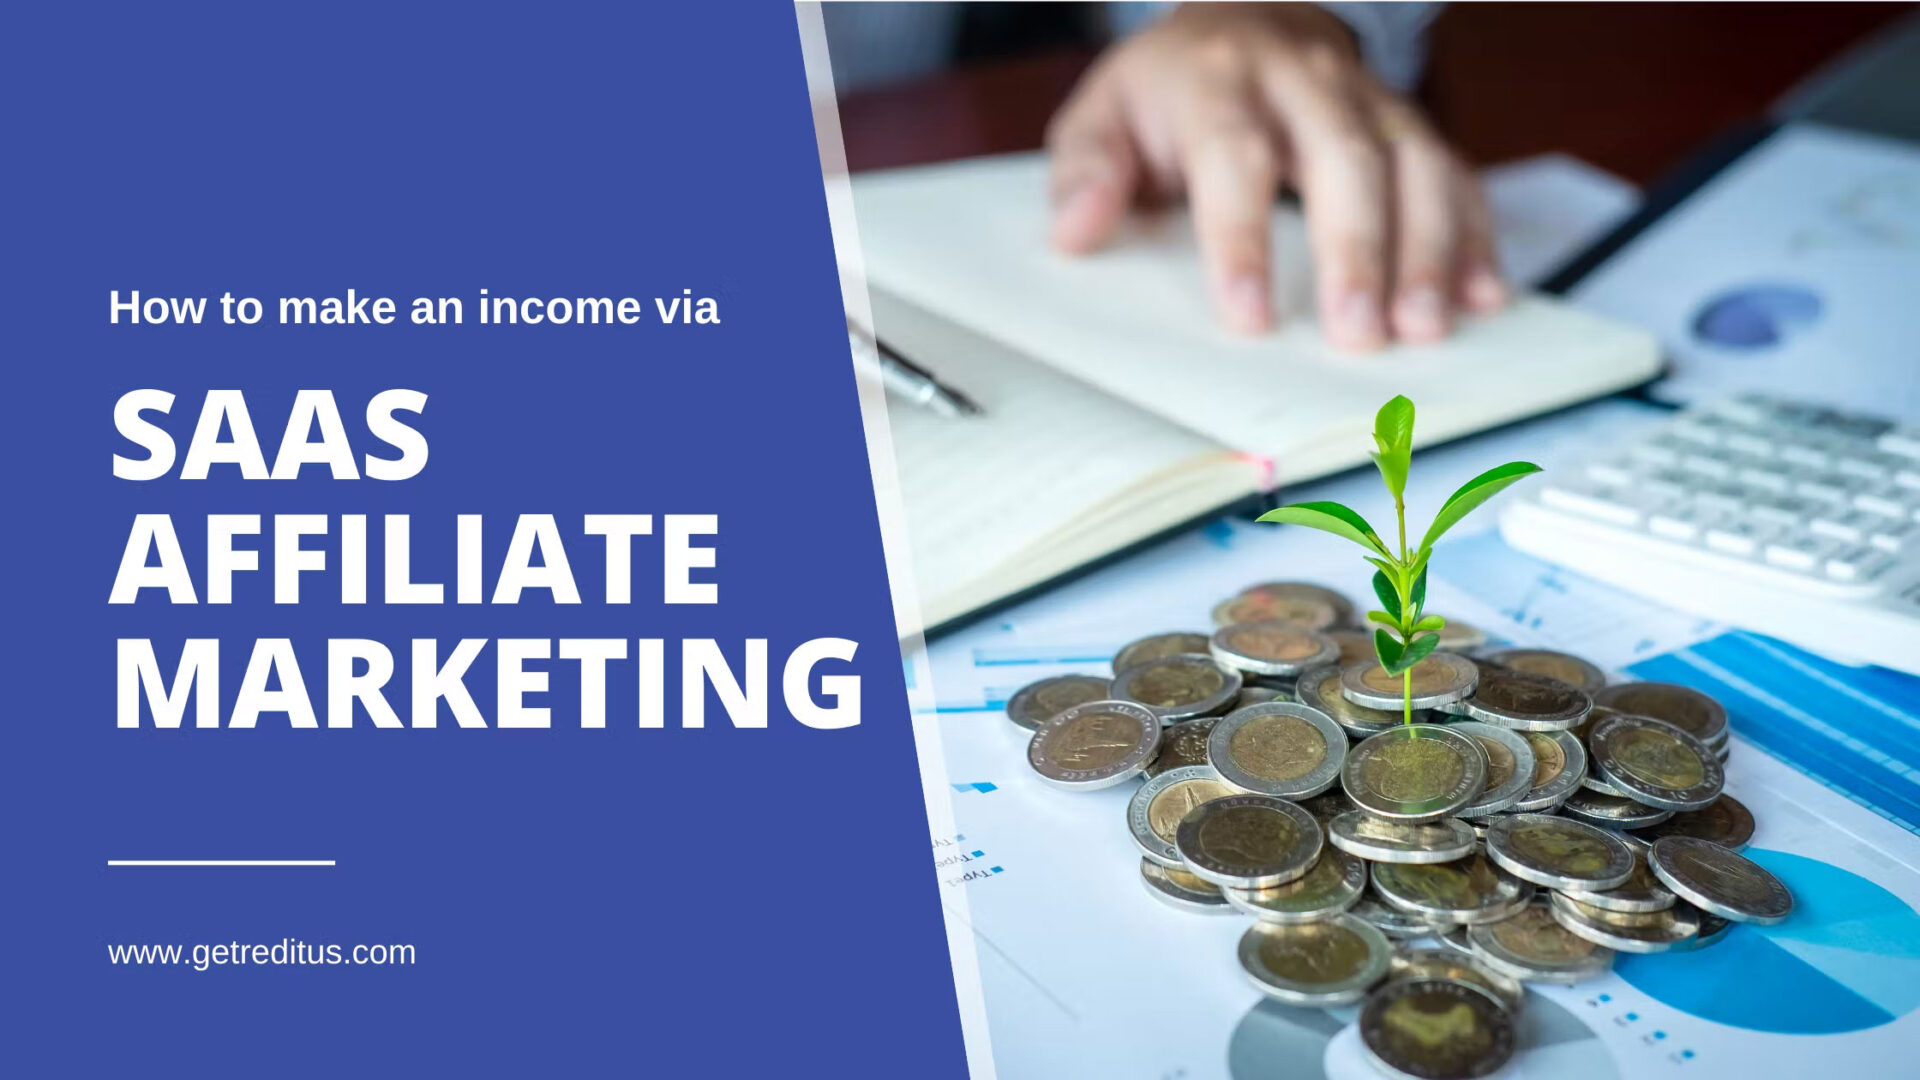 How to make an income via SaaS affiliate marketing? 